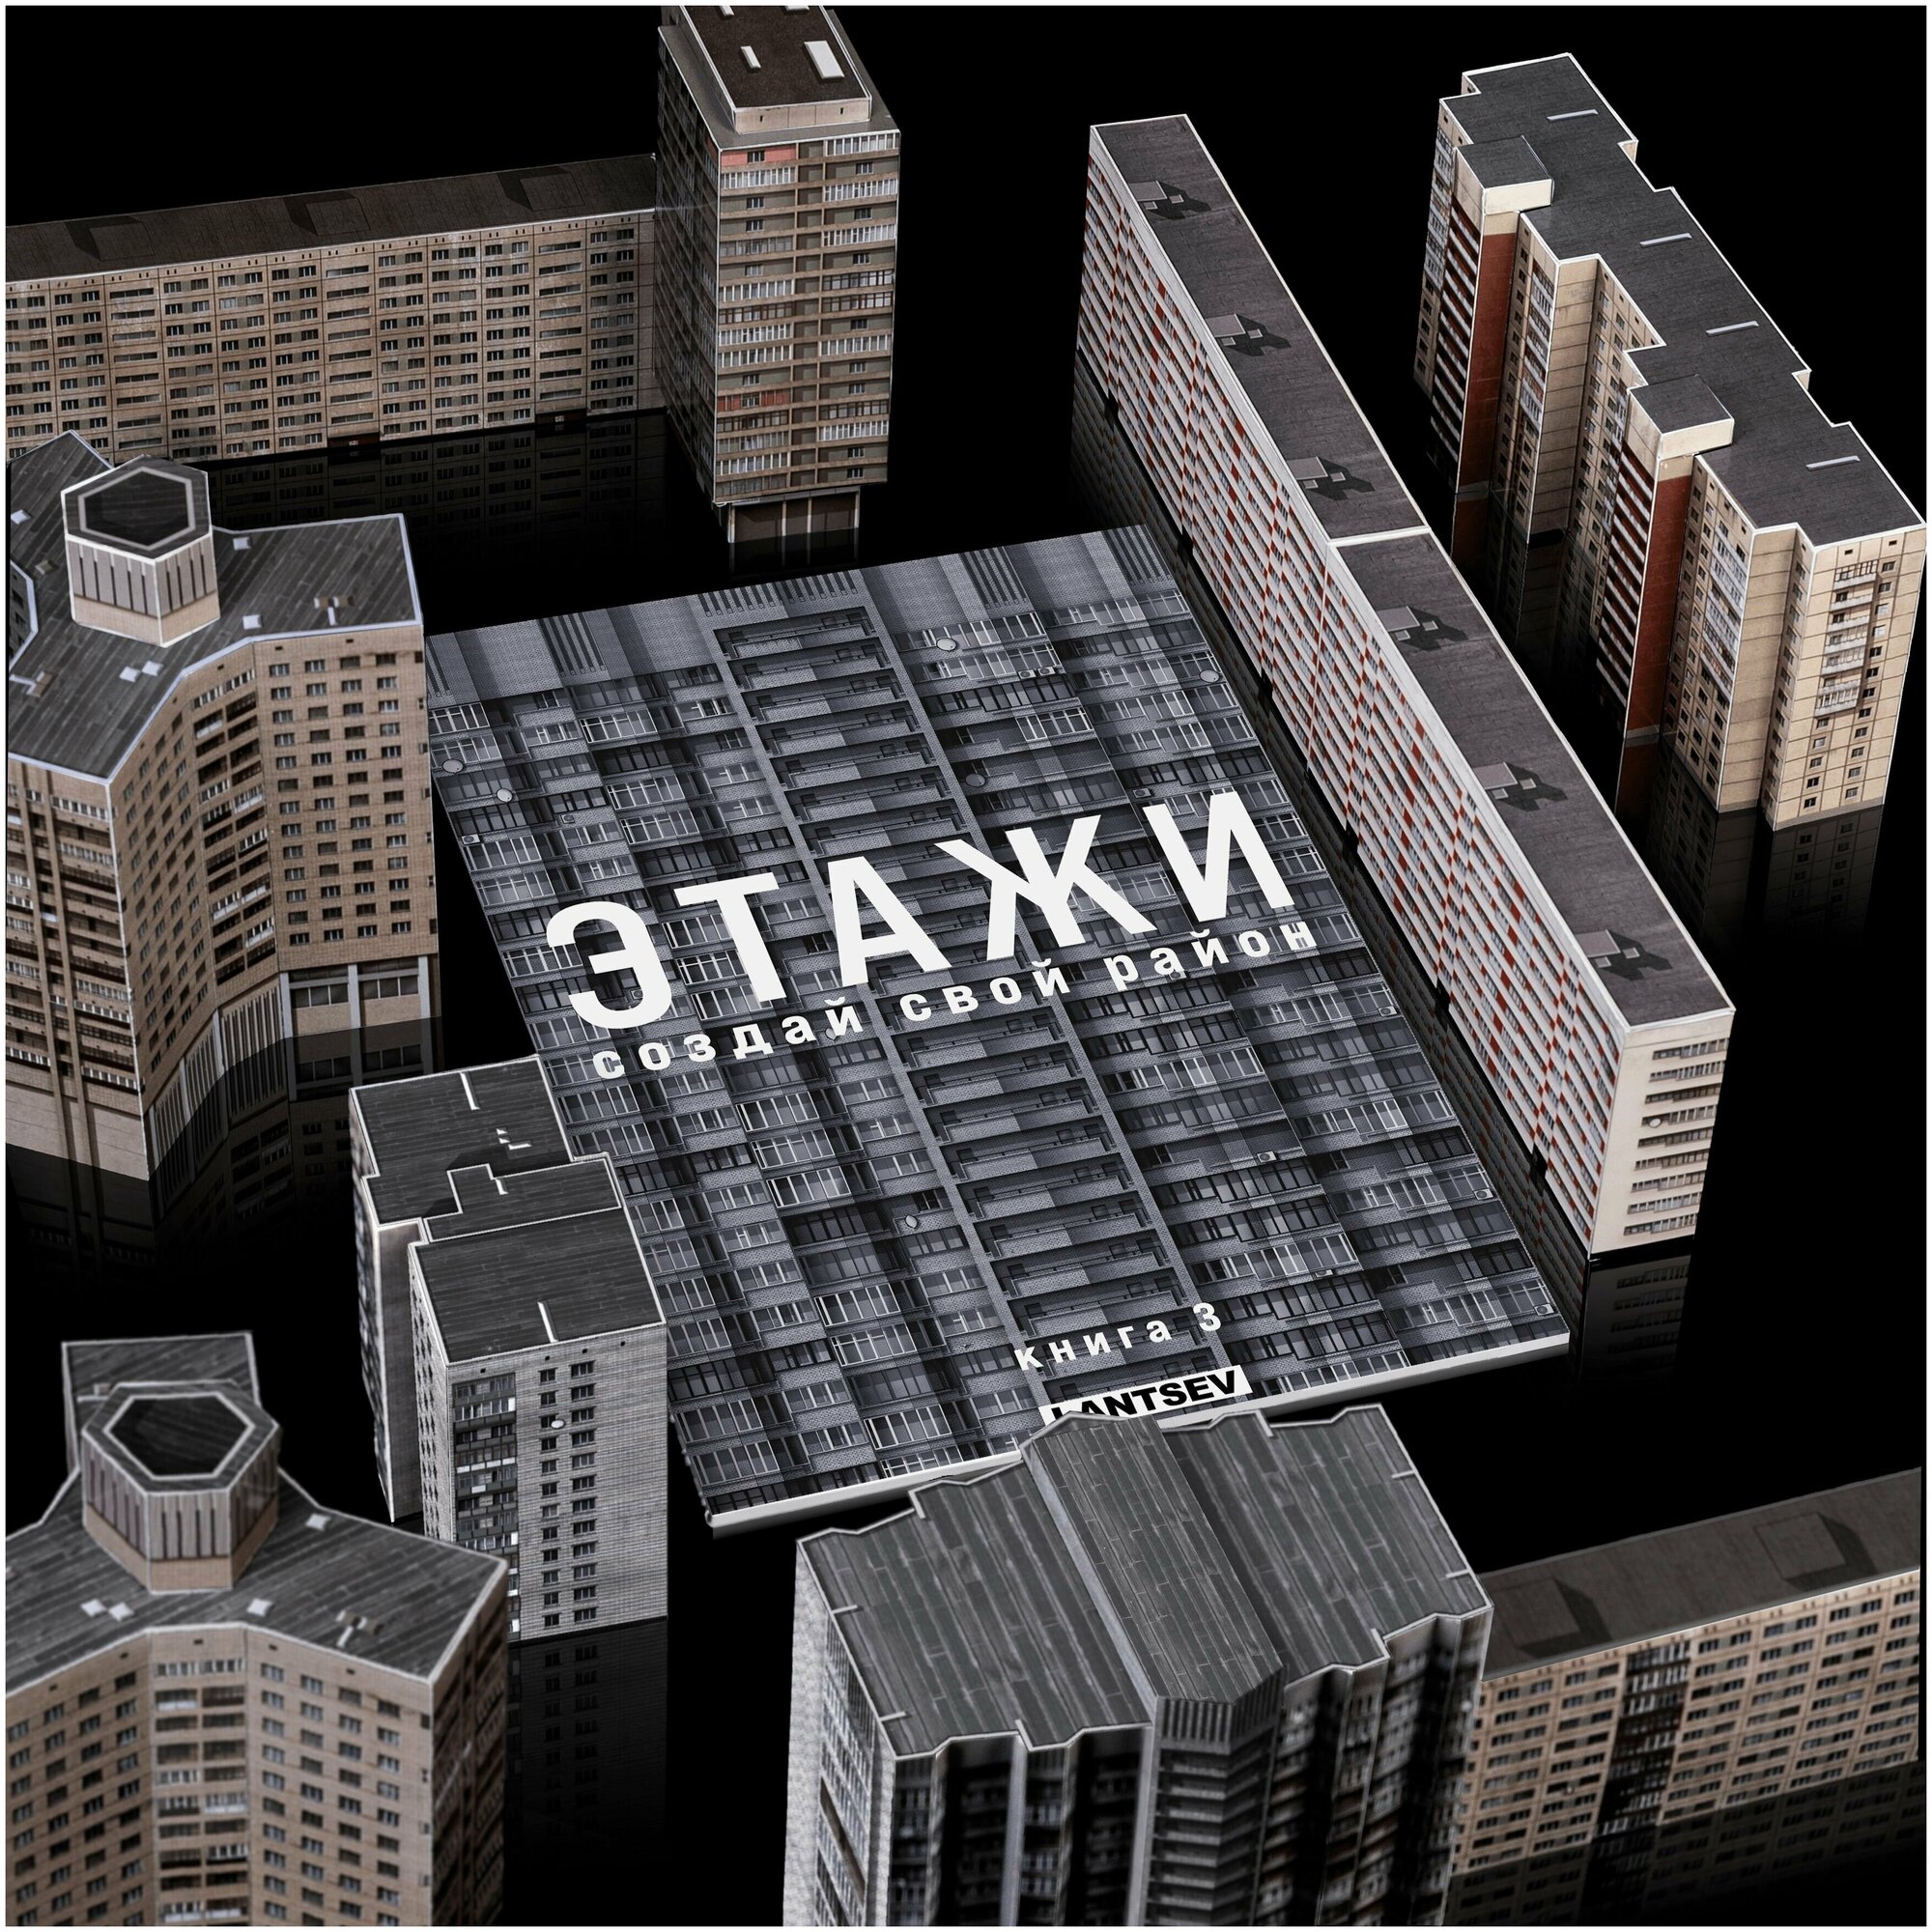 Сборная 3д модель зданий "Этажи. Создай свой район. Книга 3" конструктор бумажный 7 домов панельки 1:300